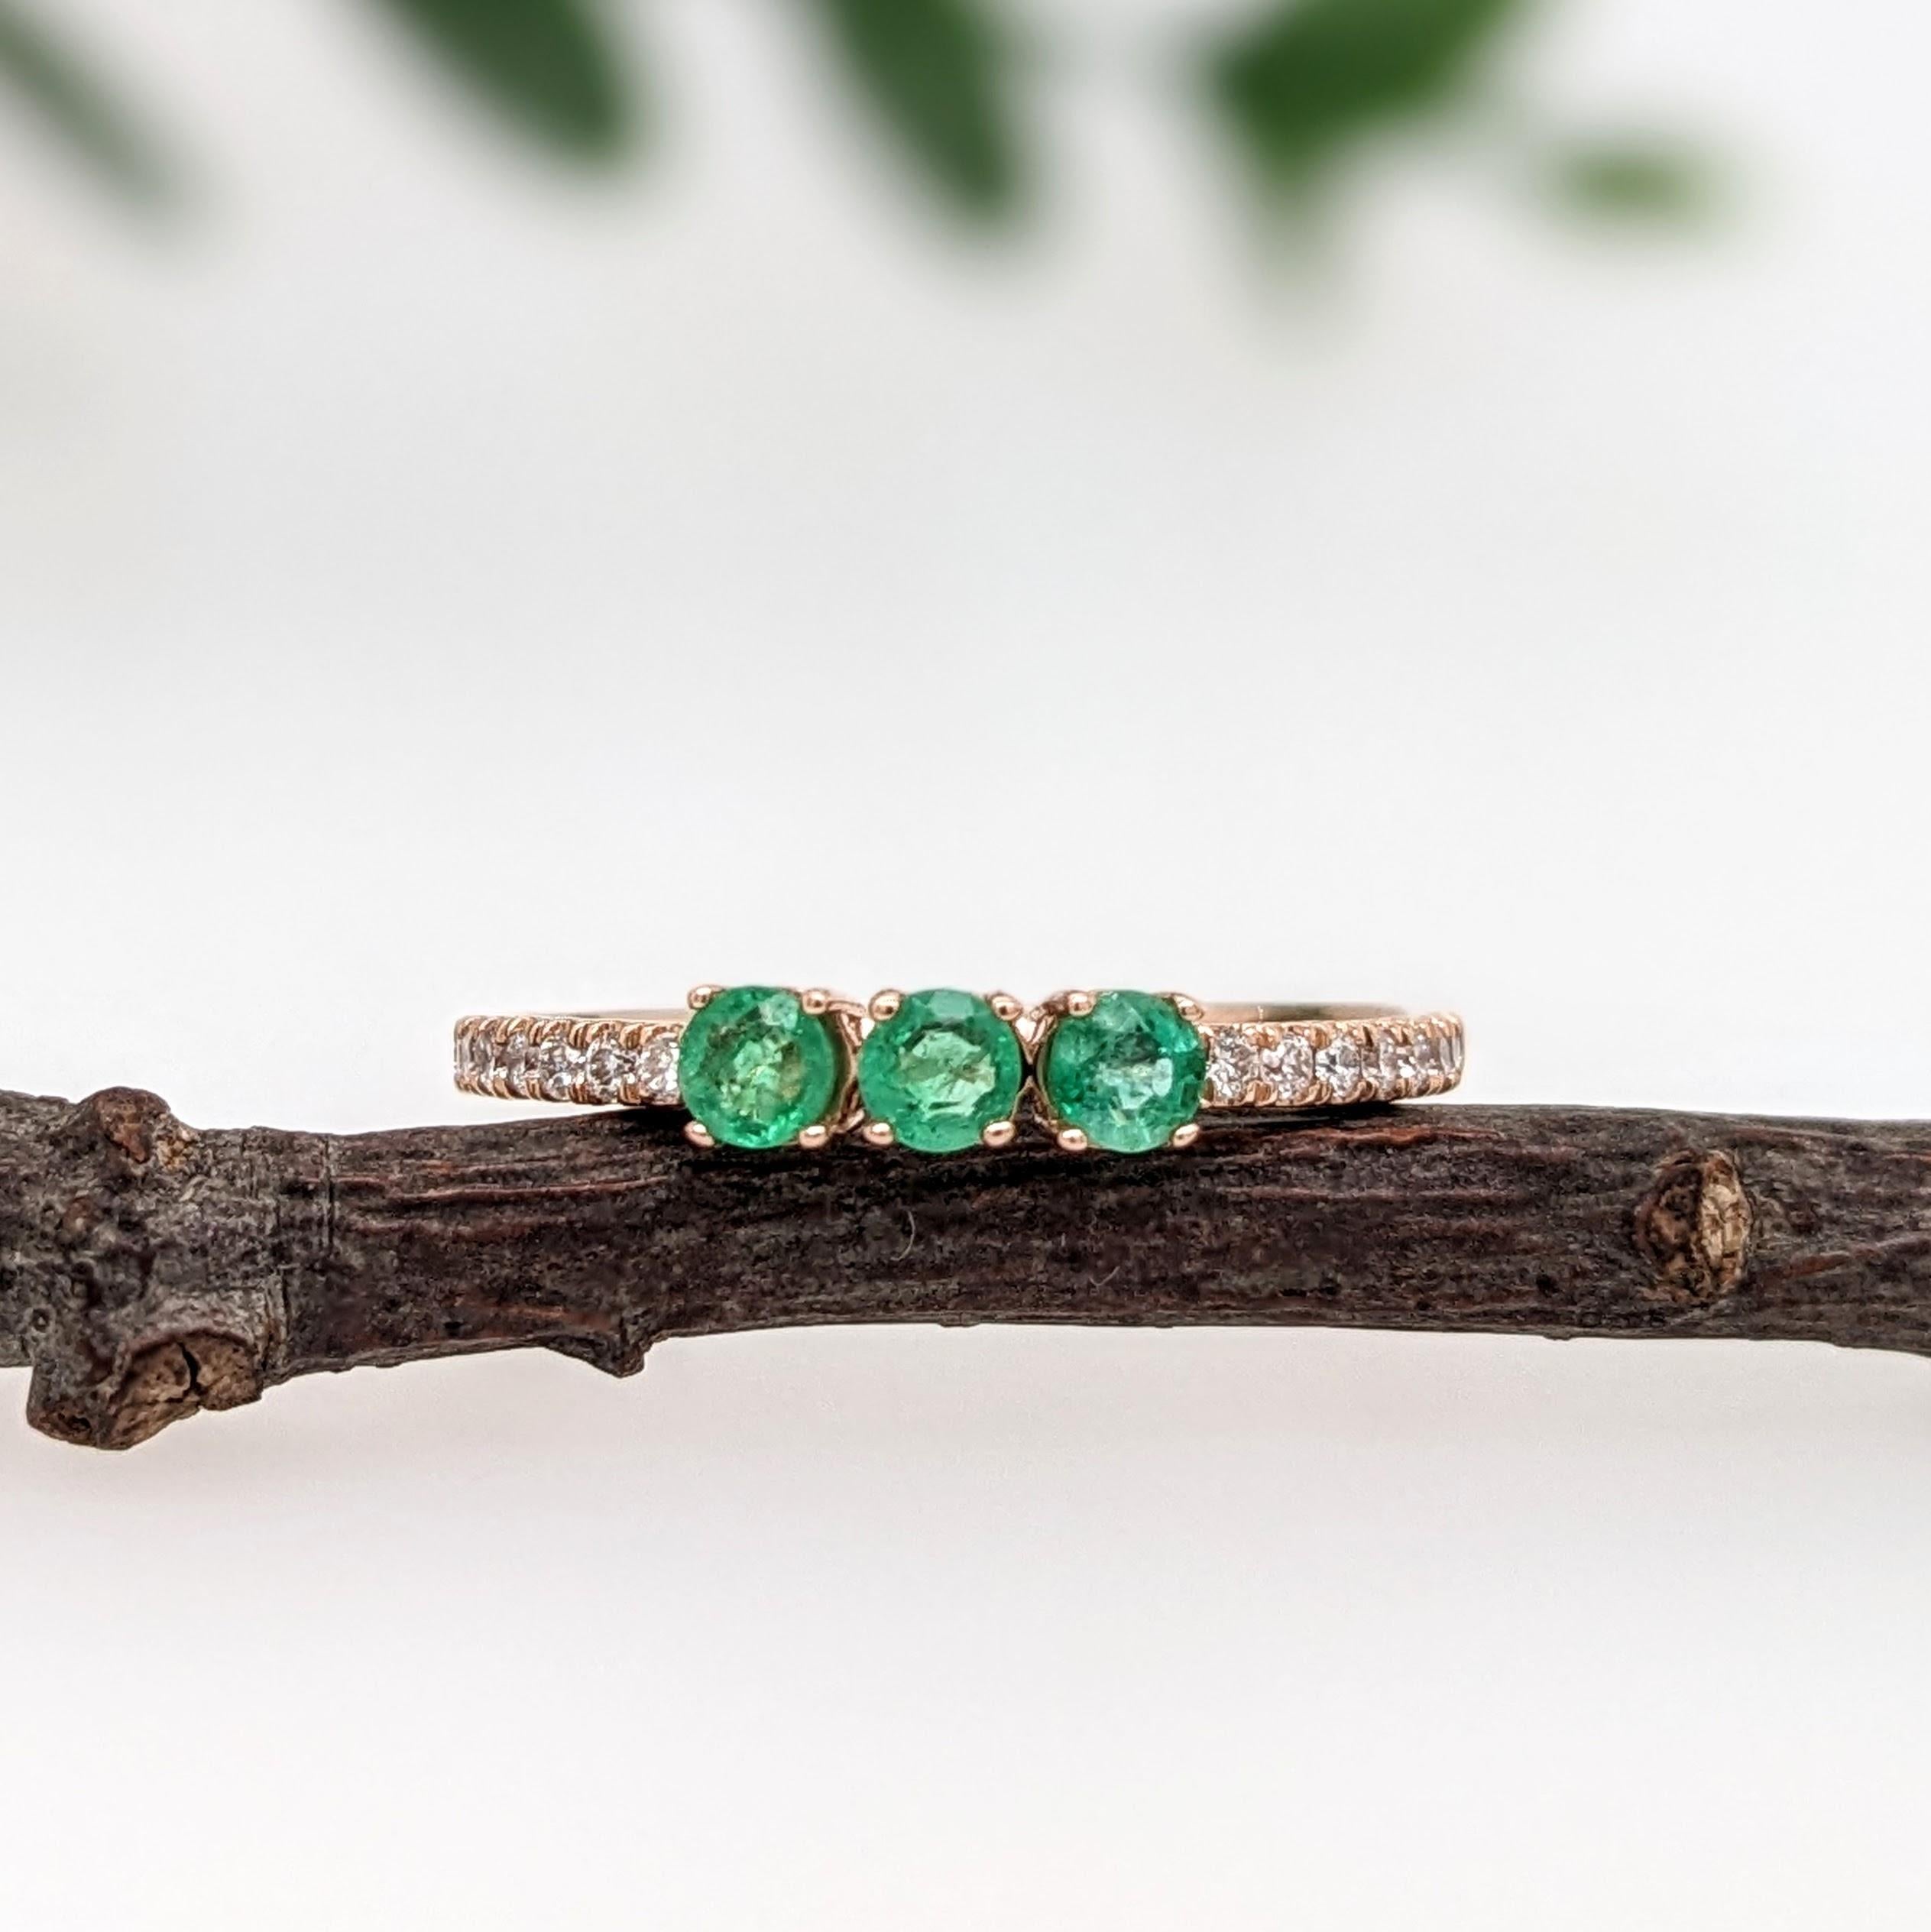 Dieser elegante Smaragdring mit 3 Steinen und natürlichen Diamanten ist raffiniert und stilvoll. Das robuste Band ermöglicht ein tägliches, sorgenfreies Tragen.
Dieser Ring ist auch ein wunderschöner Mai-Geburtssteinring für Ihre Liebsten. 

Die